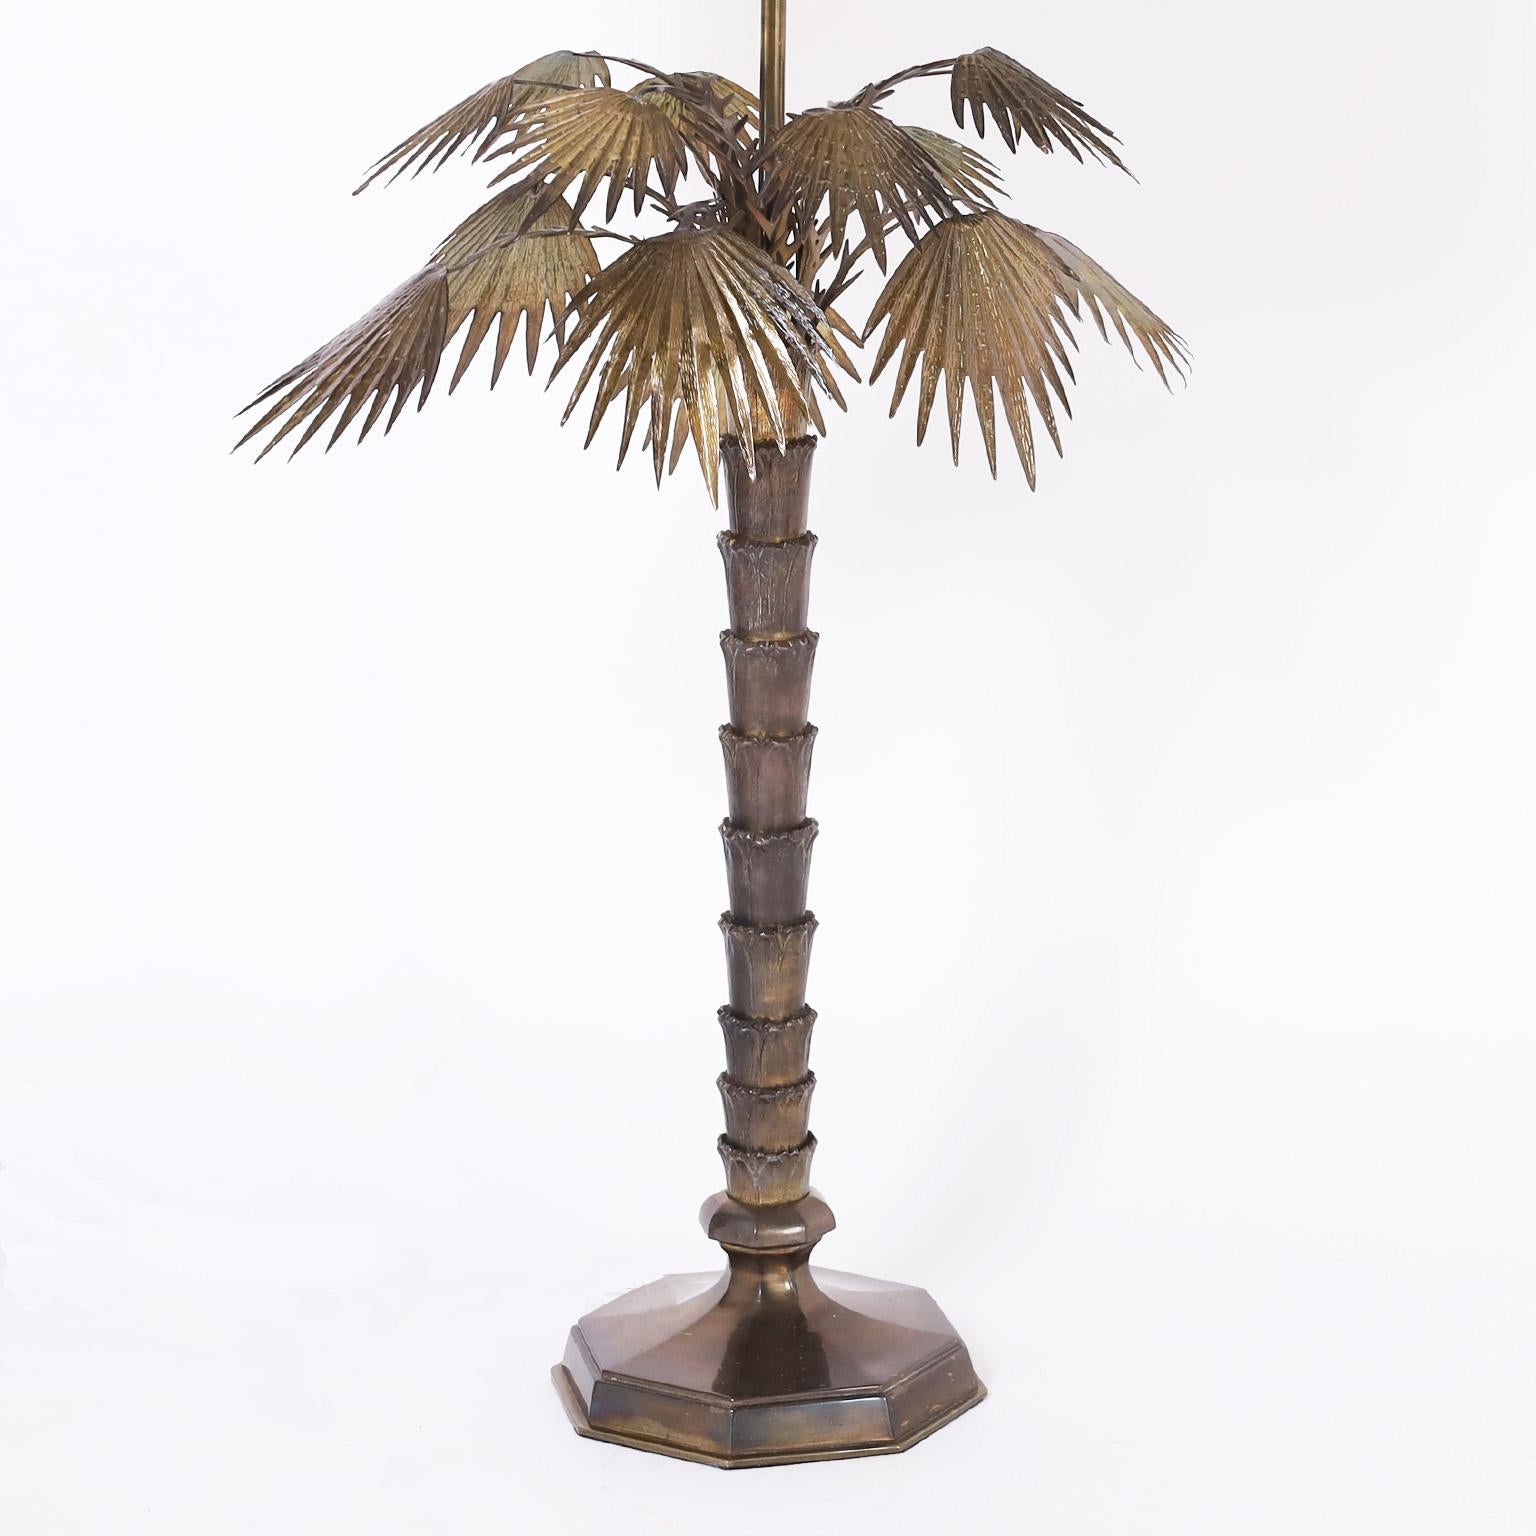 Lampe de table vintage chic à grande échelle, fabriquée en bronze sous la forme d'un palmier stylisé avec une patine vieillie luxuriante.